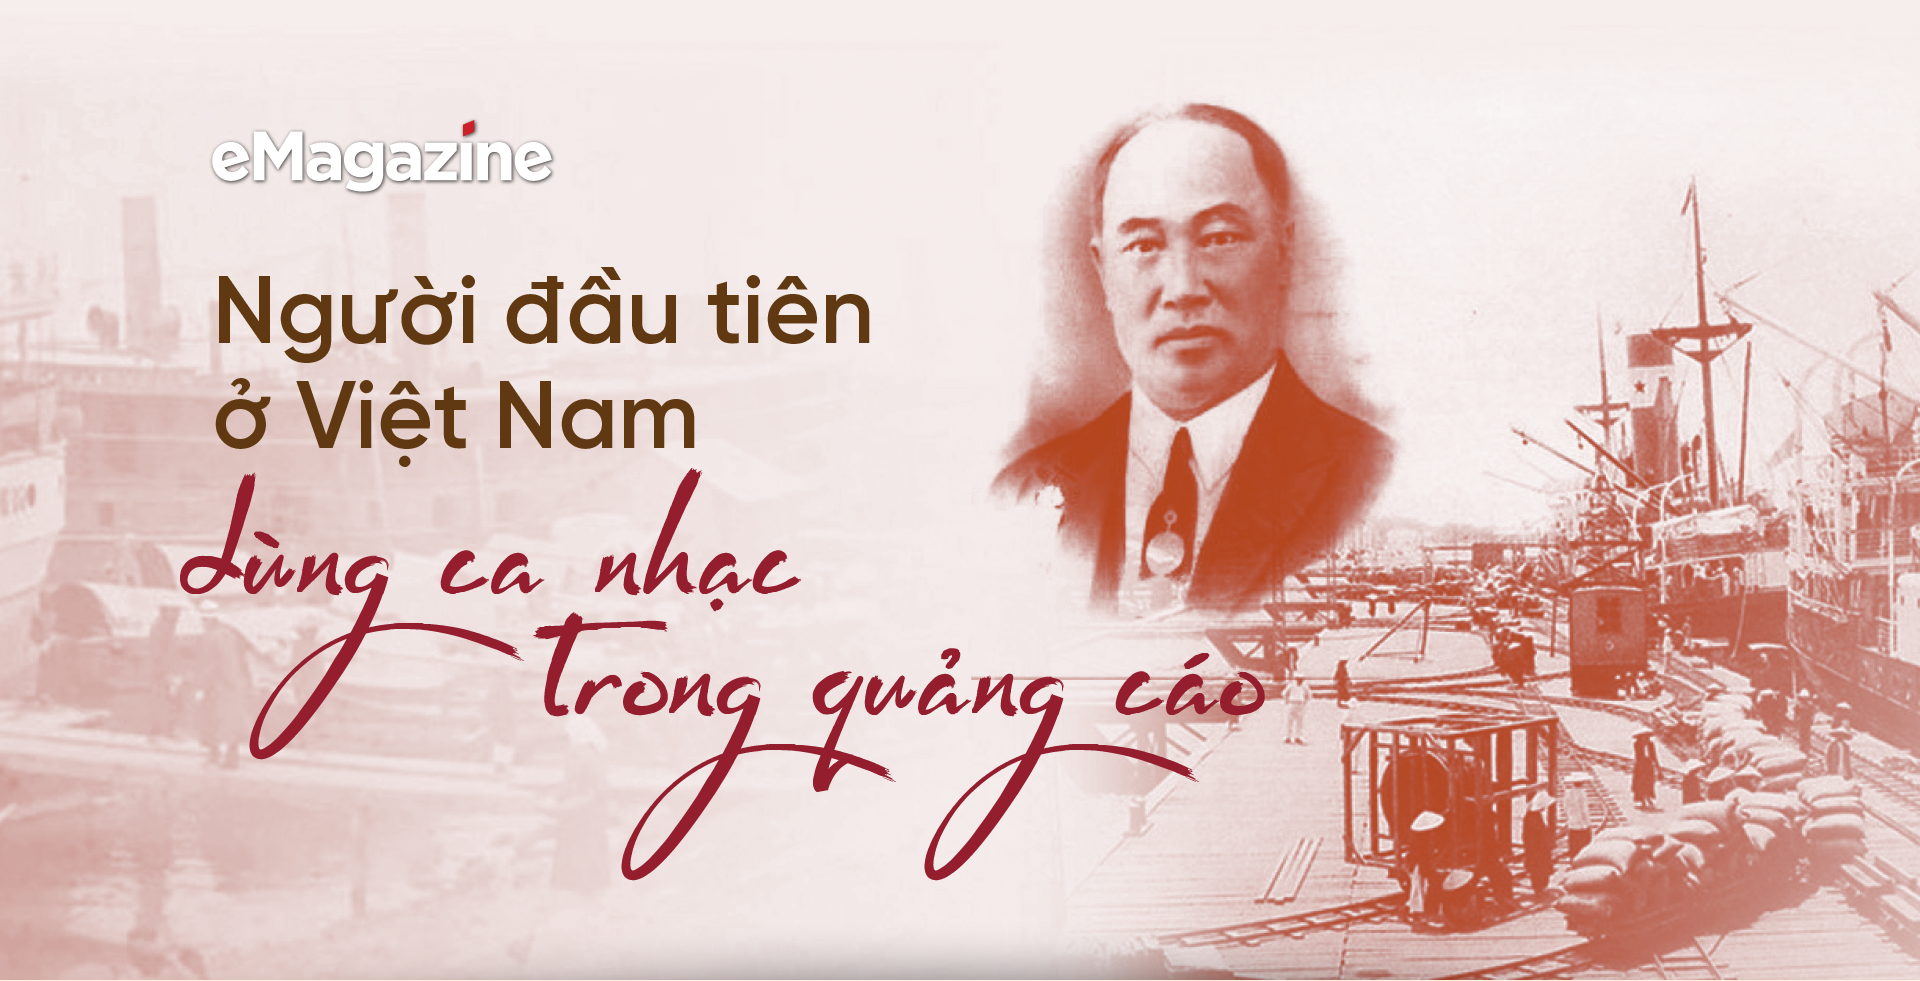 Người đầu tiên ở Việt Nam dùng ca nhạc trong quảng cáo - Ảnh 1